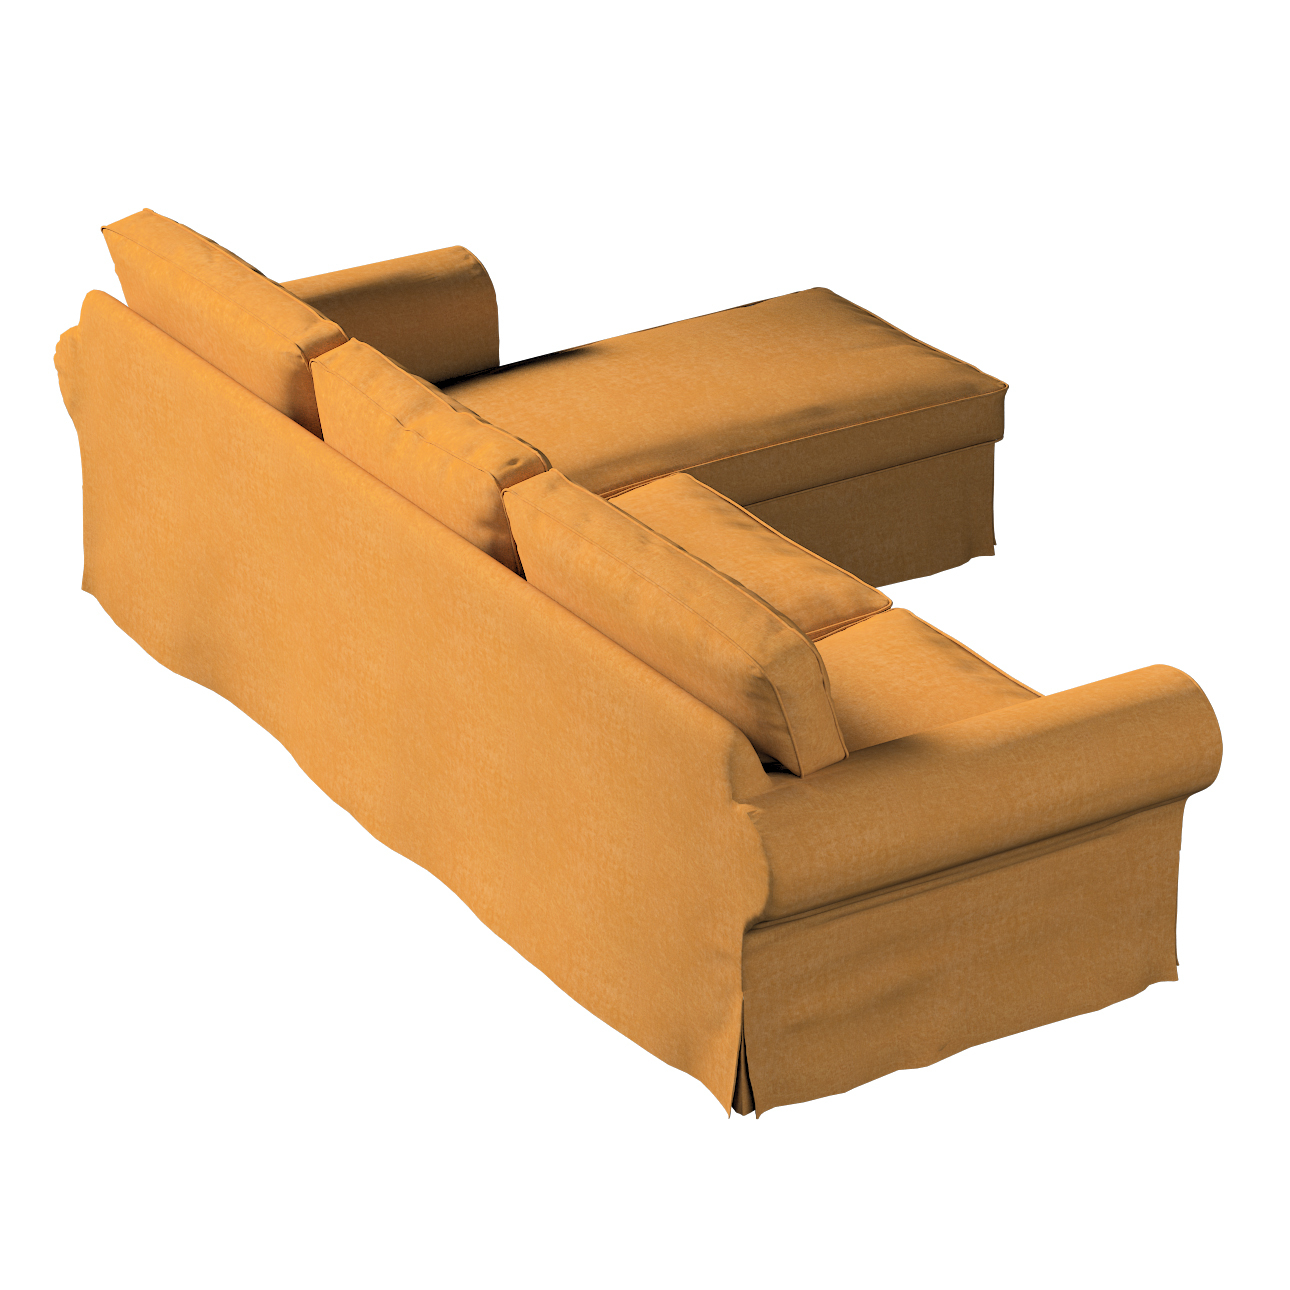 Bezug für Ektorp 2-Sitzer Sofa mit Recamiere, honiggelb, Ektorp 2-Sitzer So günstig online kaufen